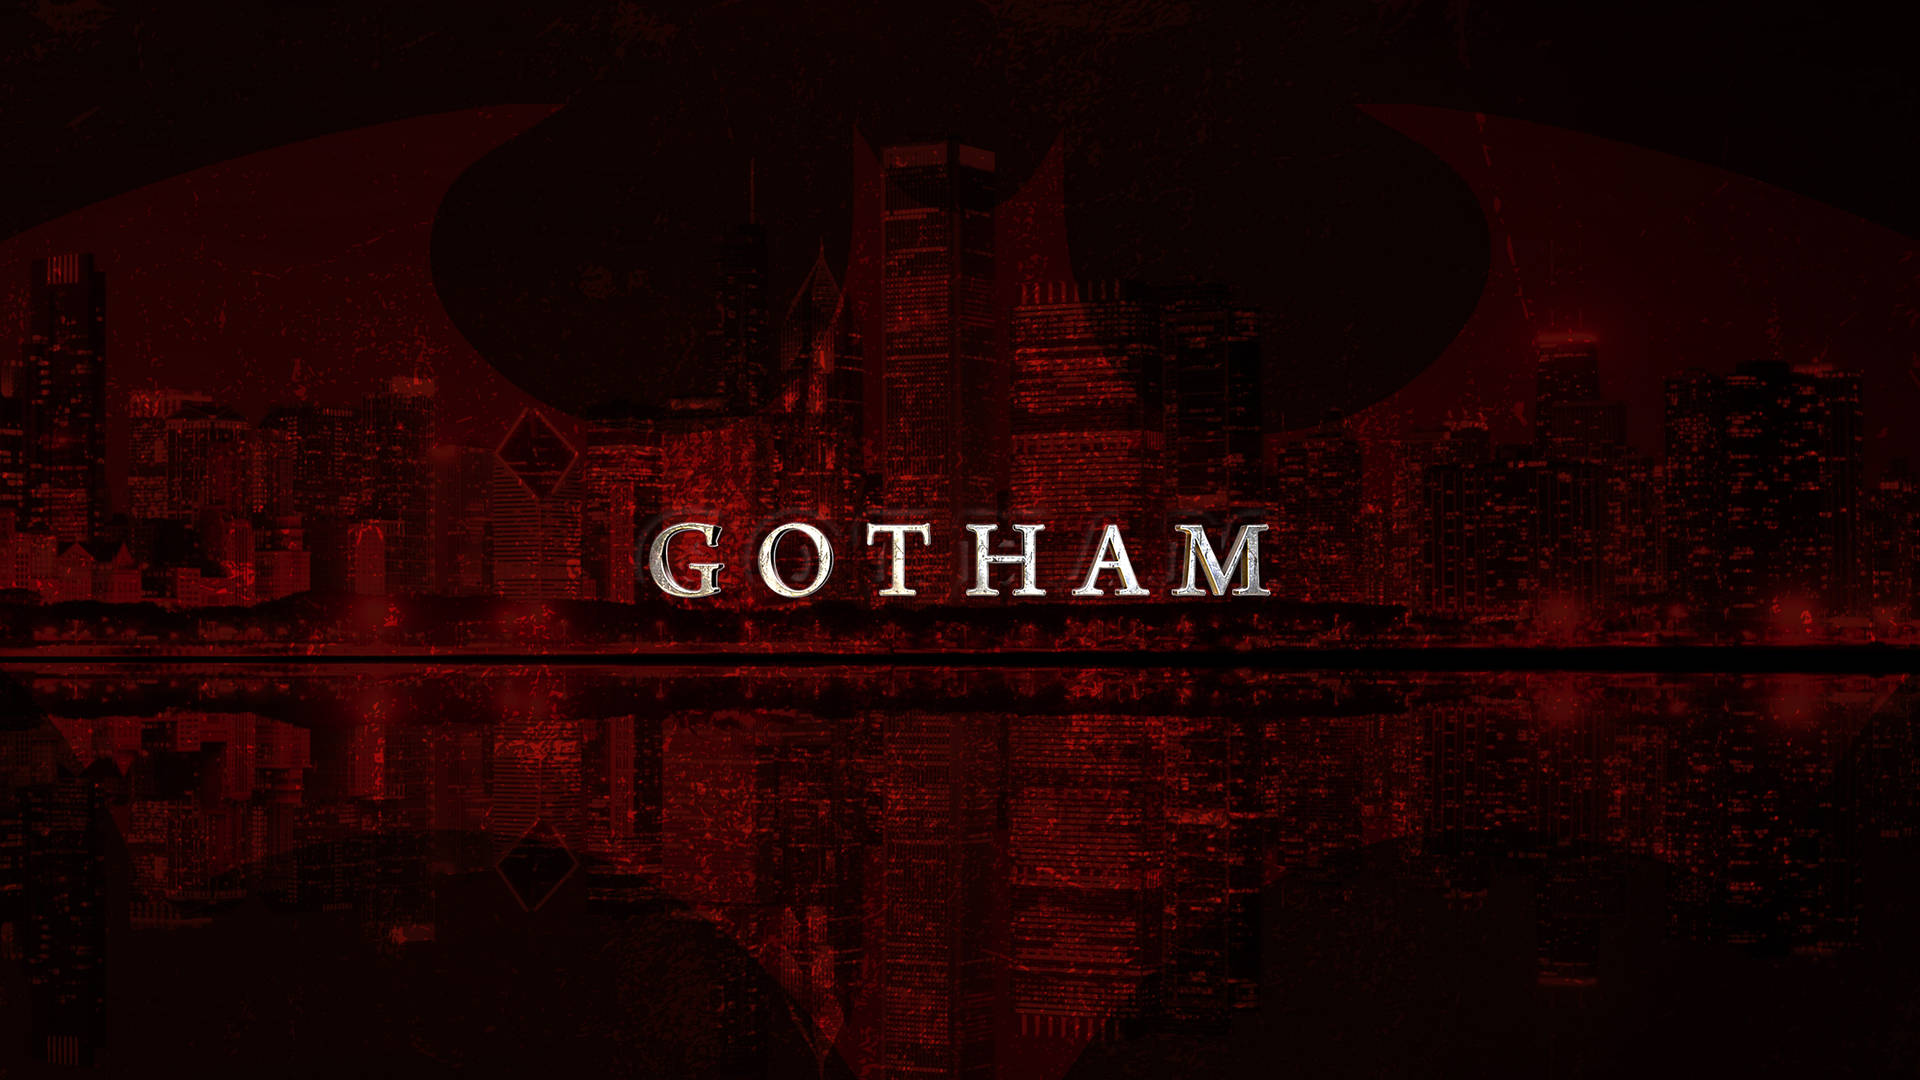 Iconicologo Di Batman In 4k Nell'ambientazione Di Gotham Sfondo